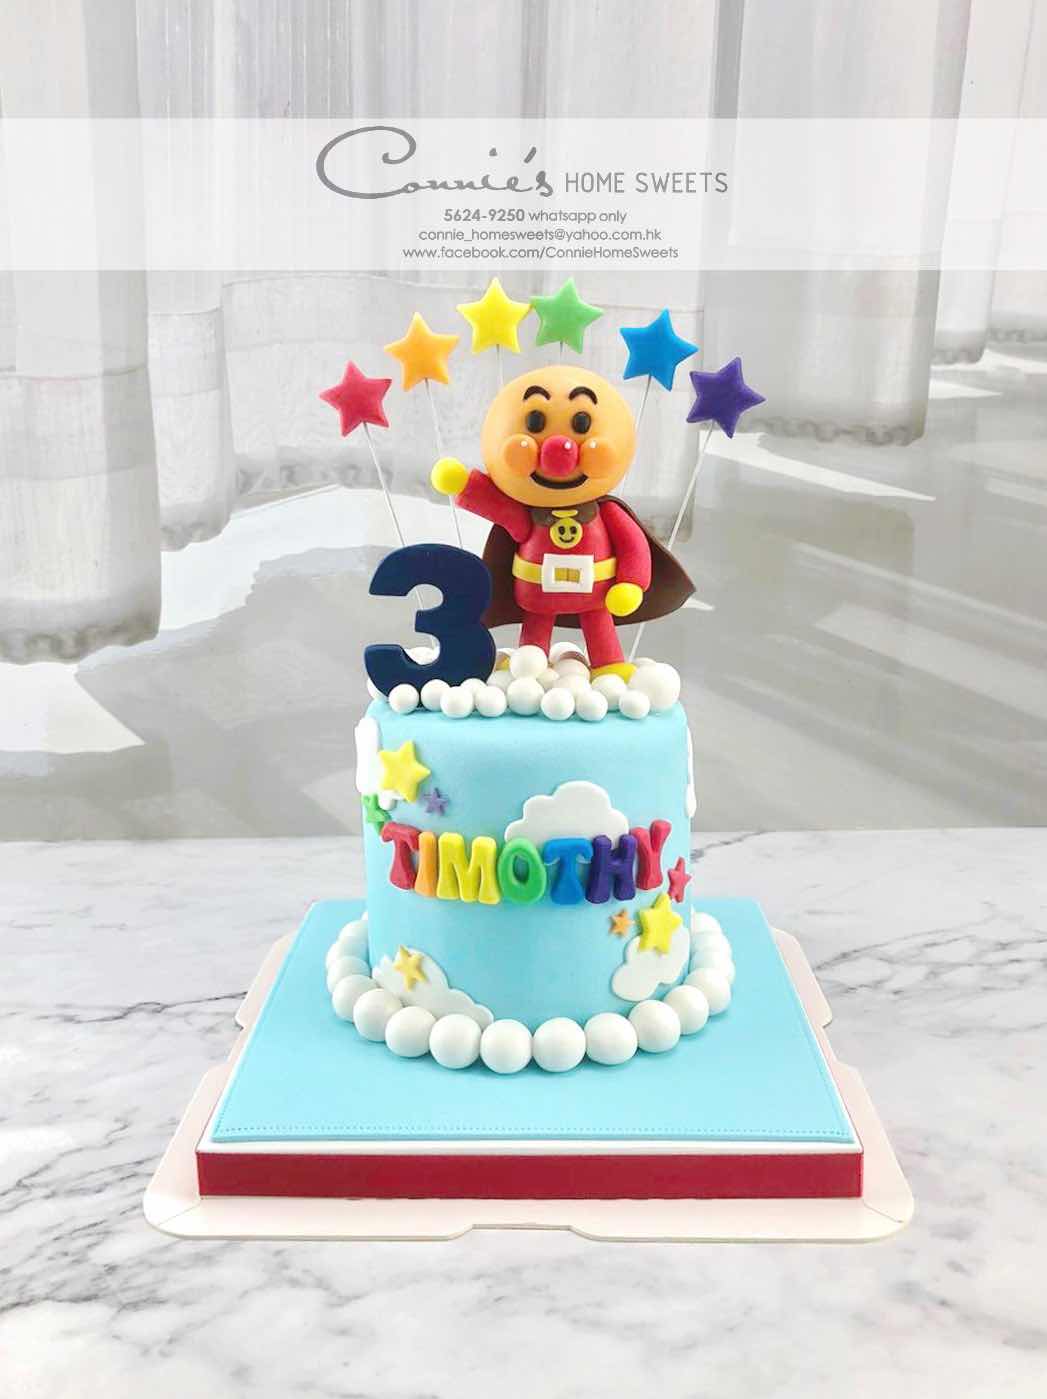 超人蛋糕 | InCake 3D立體蛋糕專門店 (3D cake shop) ~ Contact:62855321 (Whatsapp) 3d ...